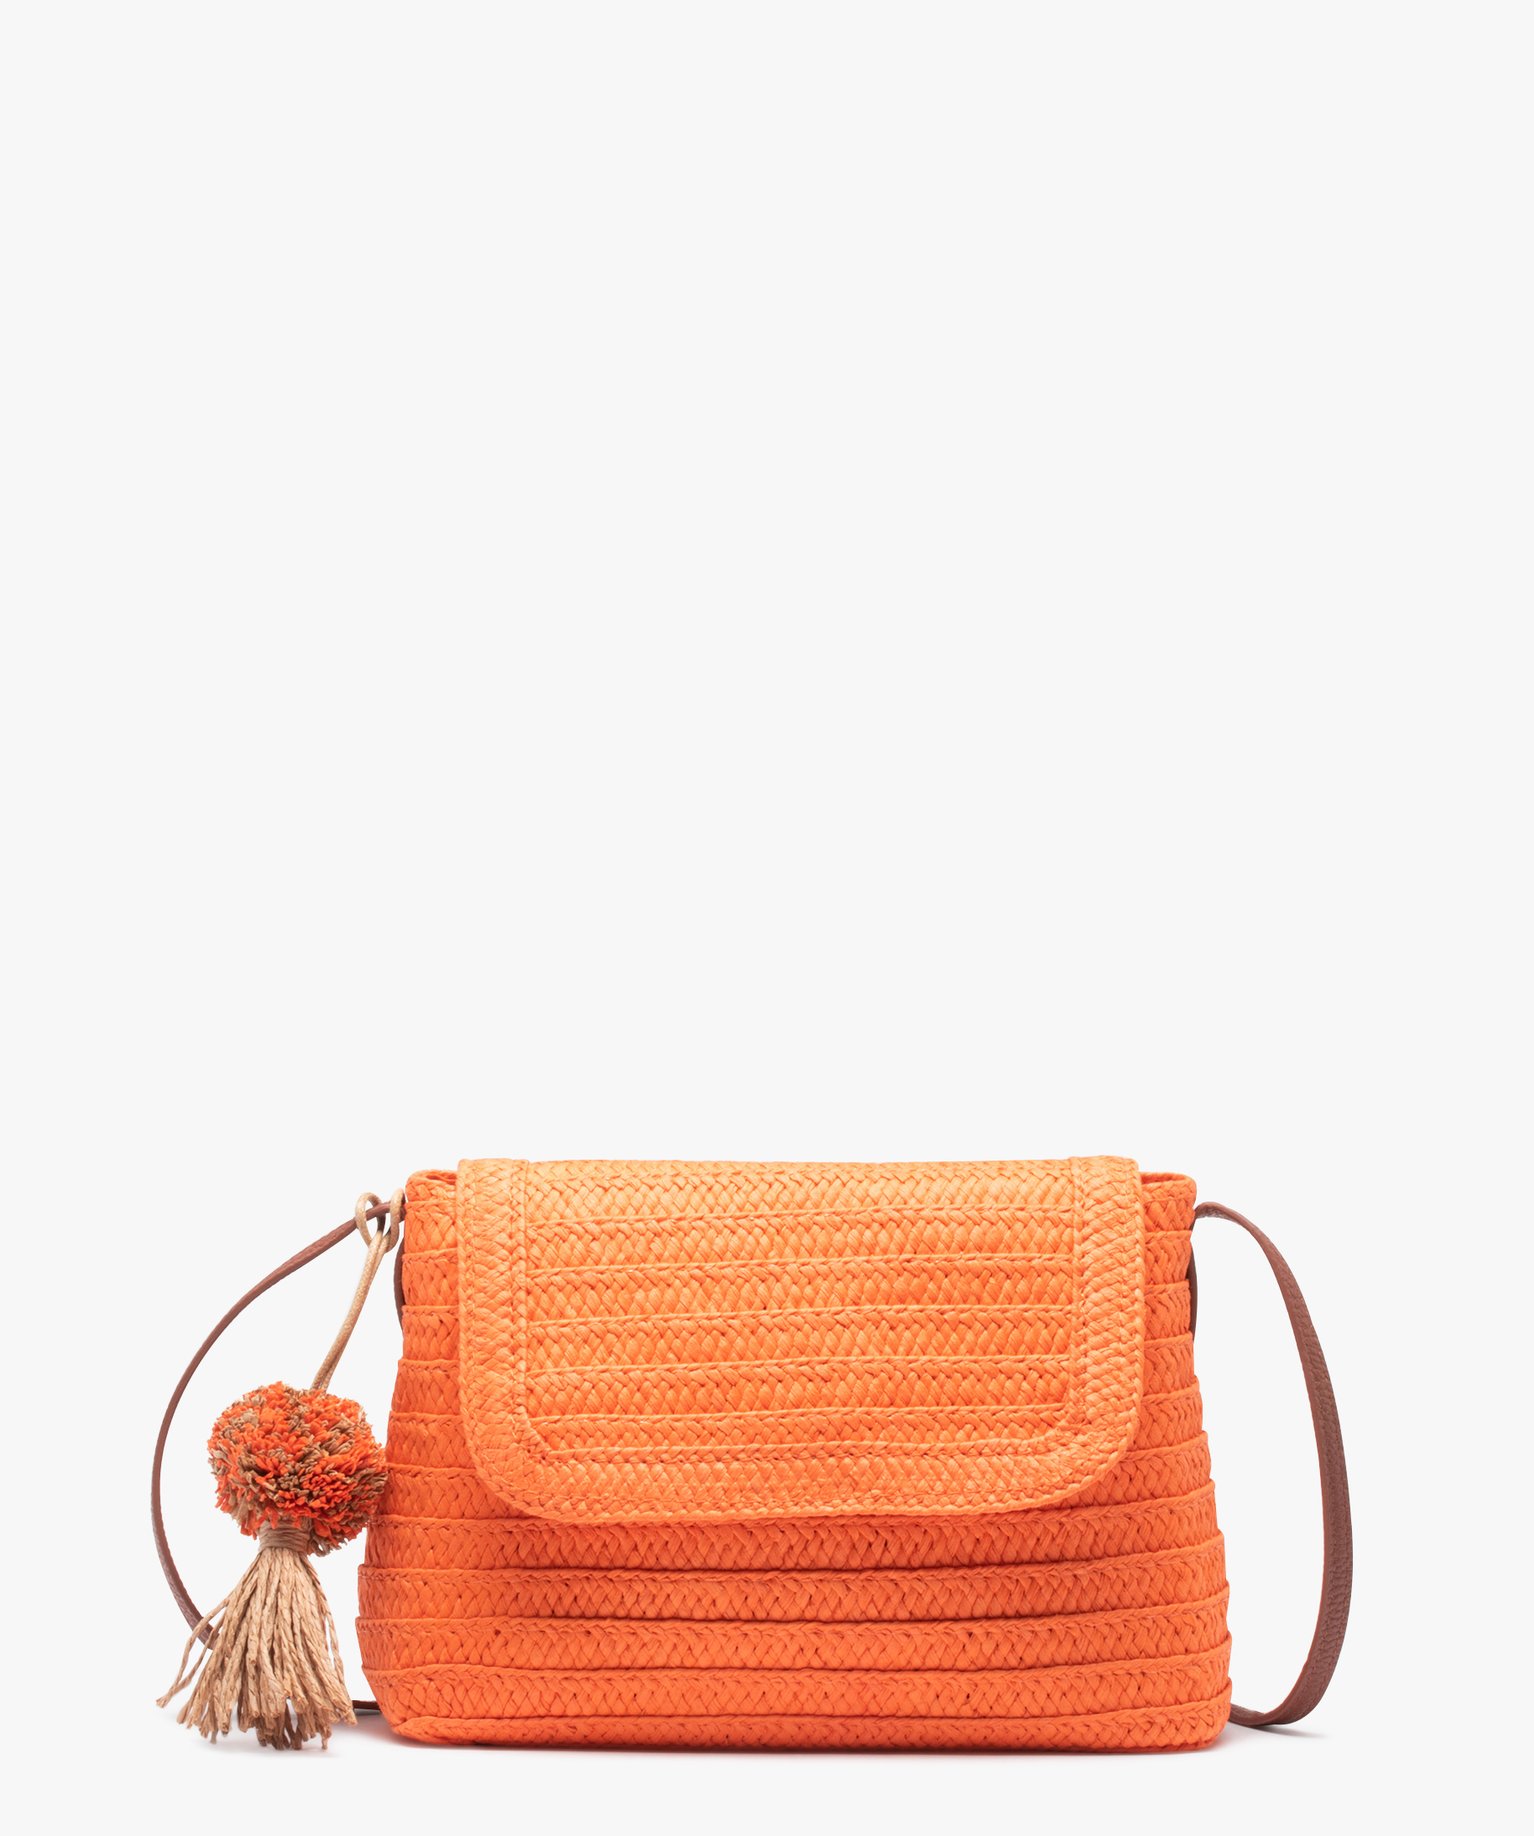 sac besace femme en paille avec pompon orange sacs bandouliere